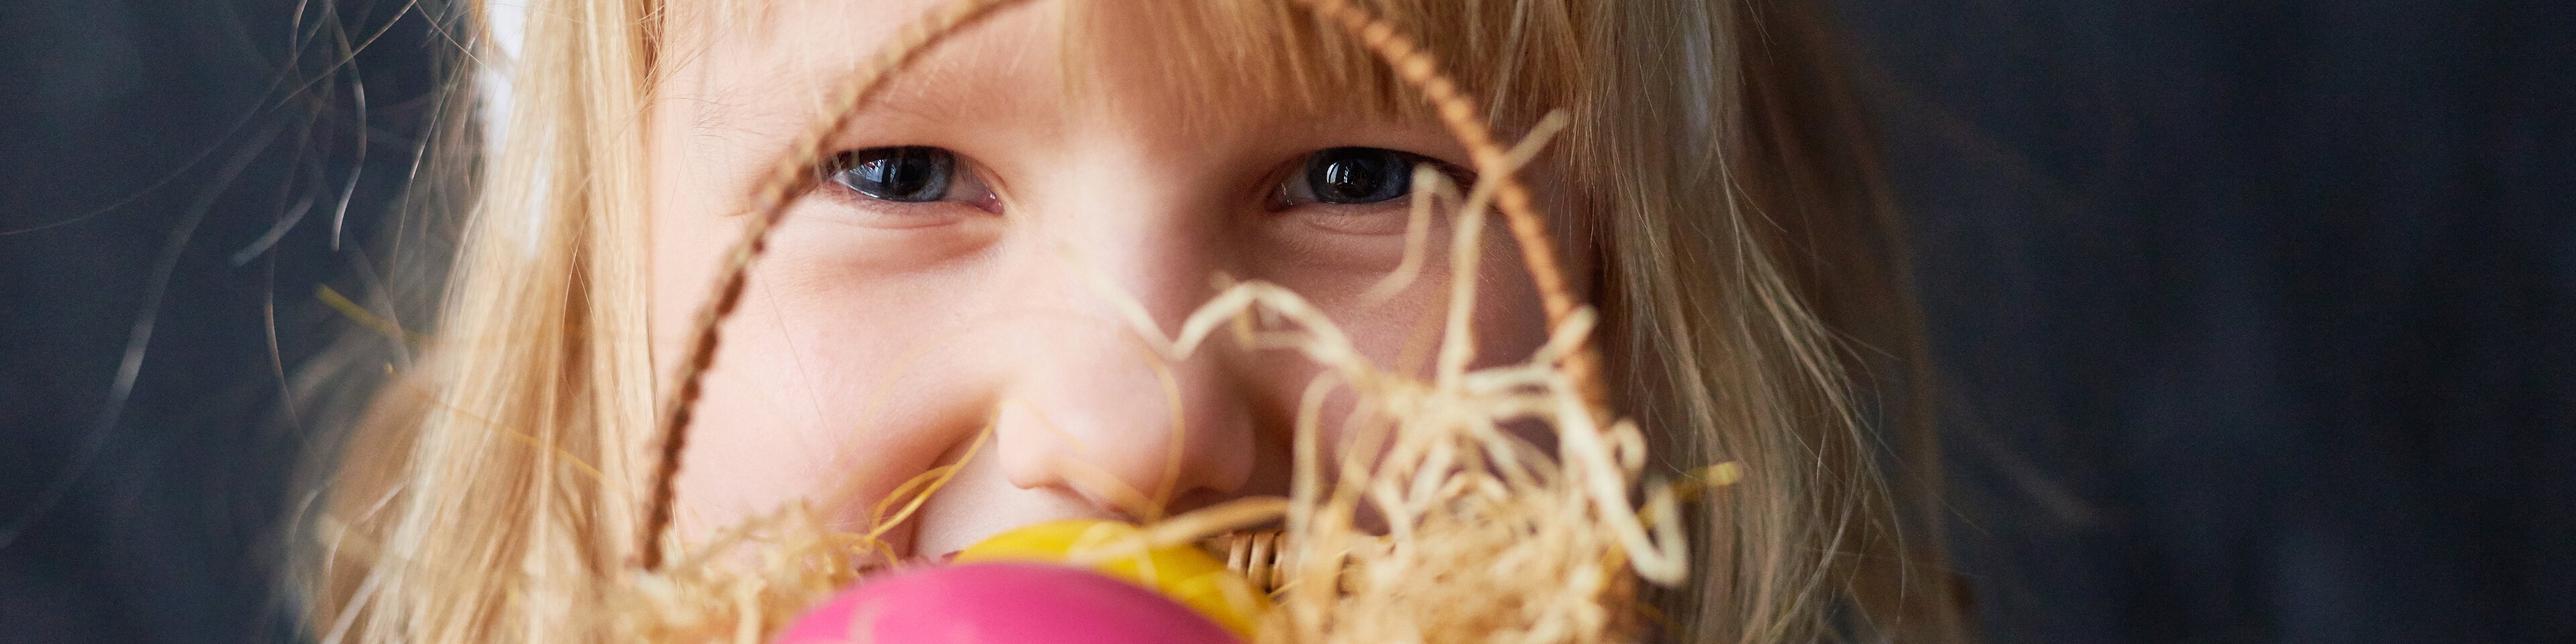 Junges Mädchen mit einem Osternest in der Hand | © mediaphotos - GettyImages/iStockphoto